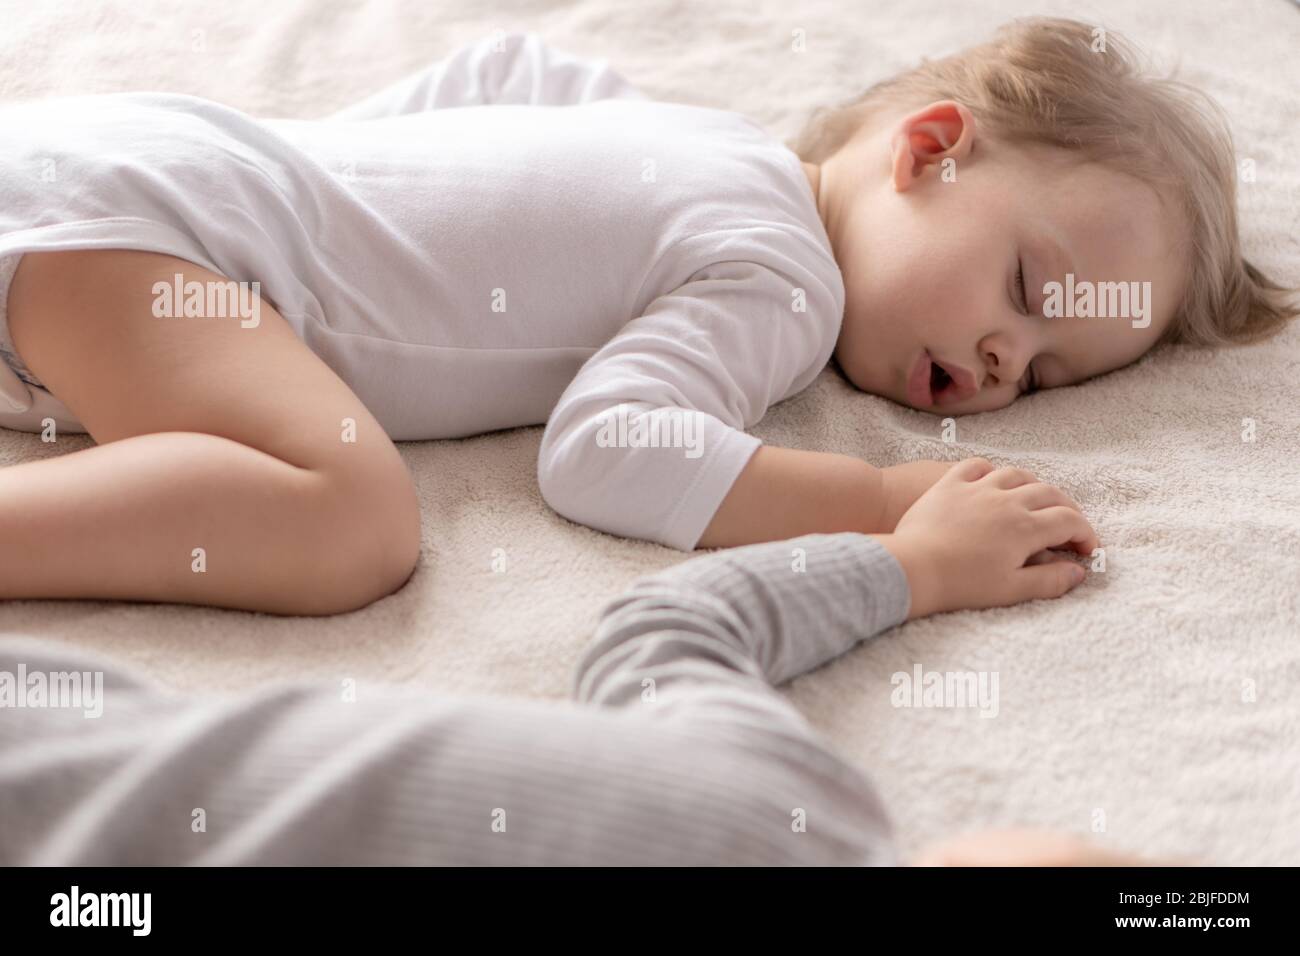 Enfance, sommeil, détente, famille, style de vie concept - deux jeunes enfants de 2 et 3 ans vêtus de body blanc et beige dorment sur un beige Banque D'Images